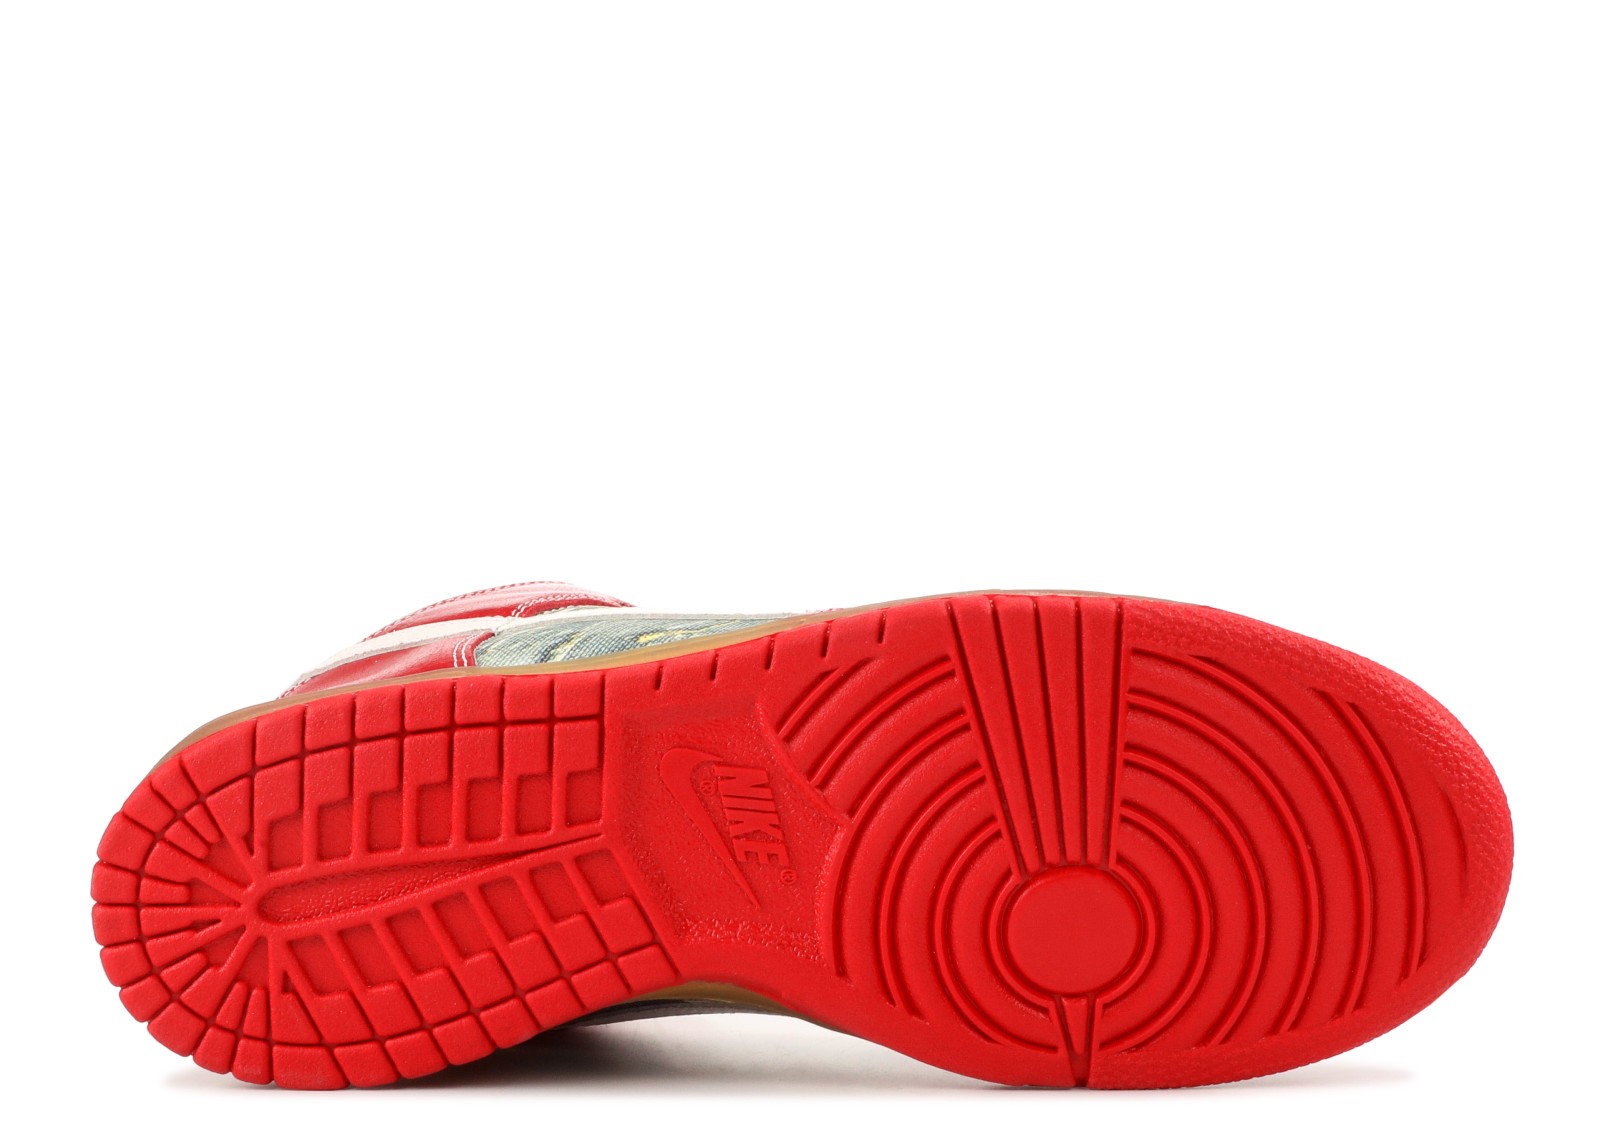 Nike Dunk High SB Shoe Goo Review